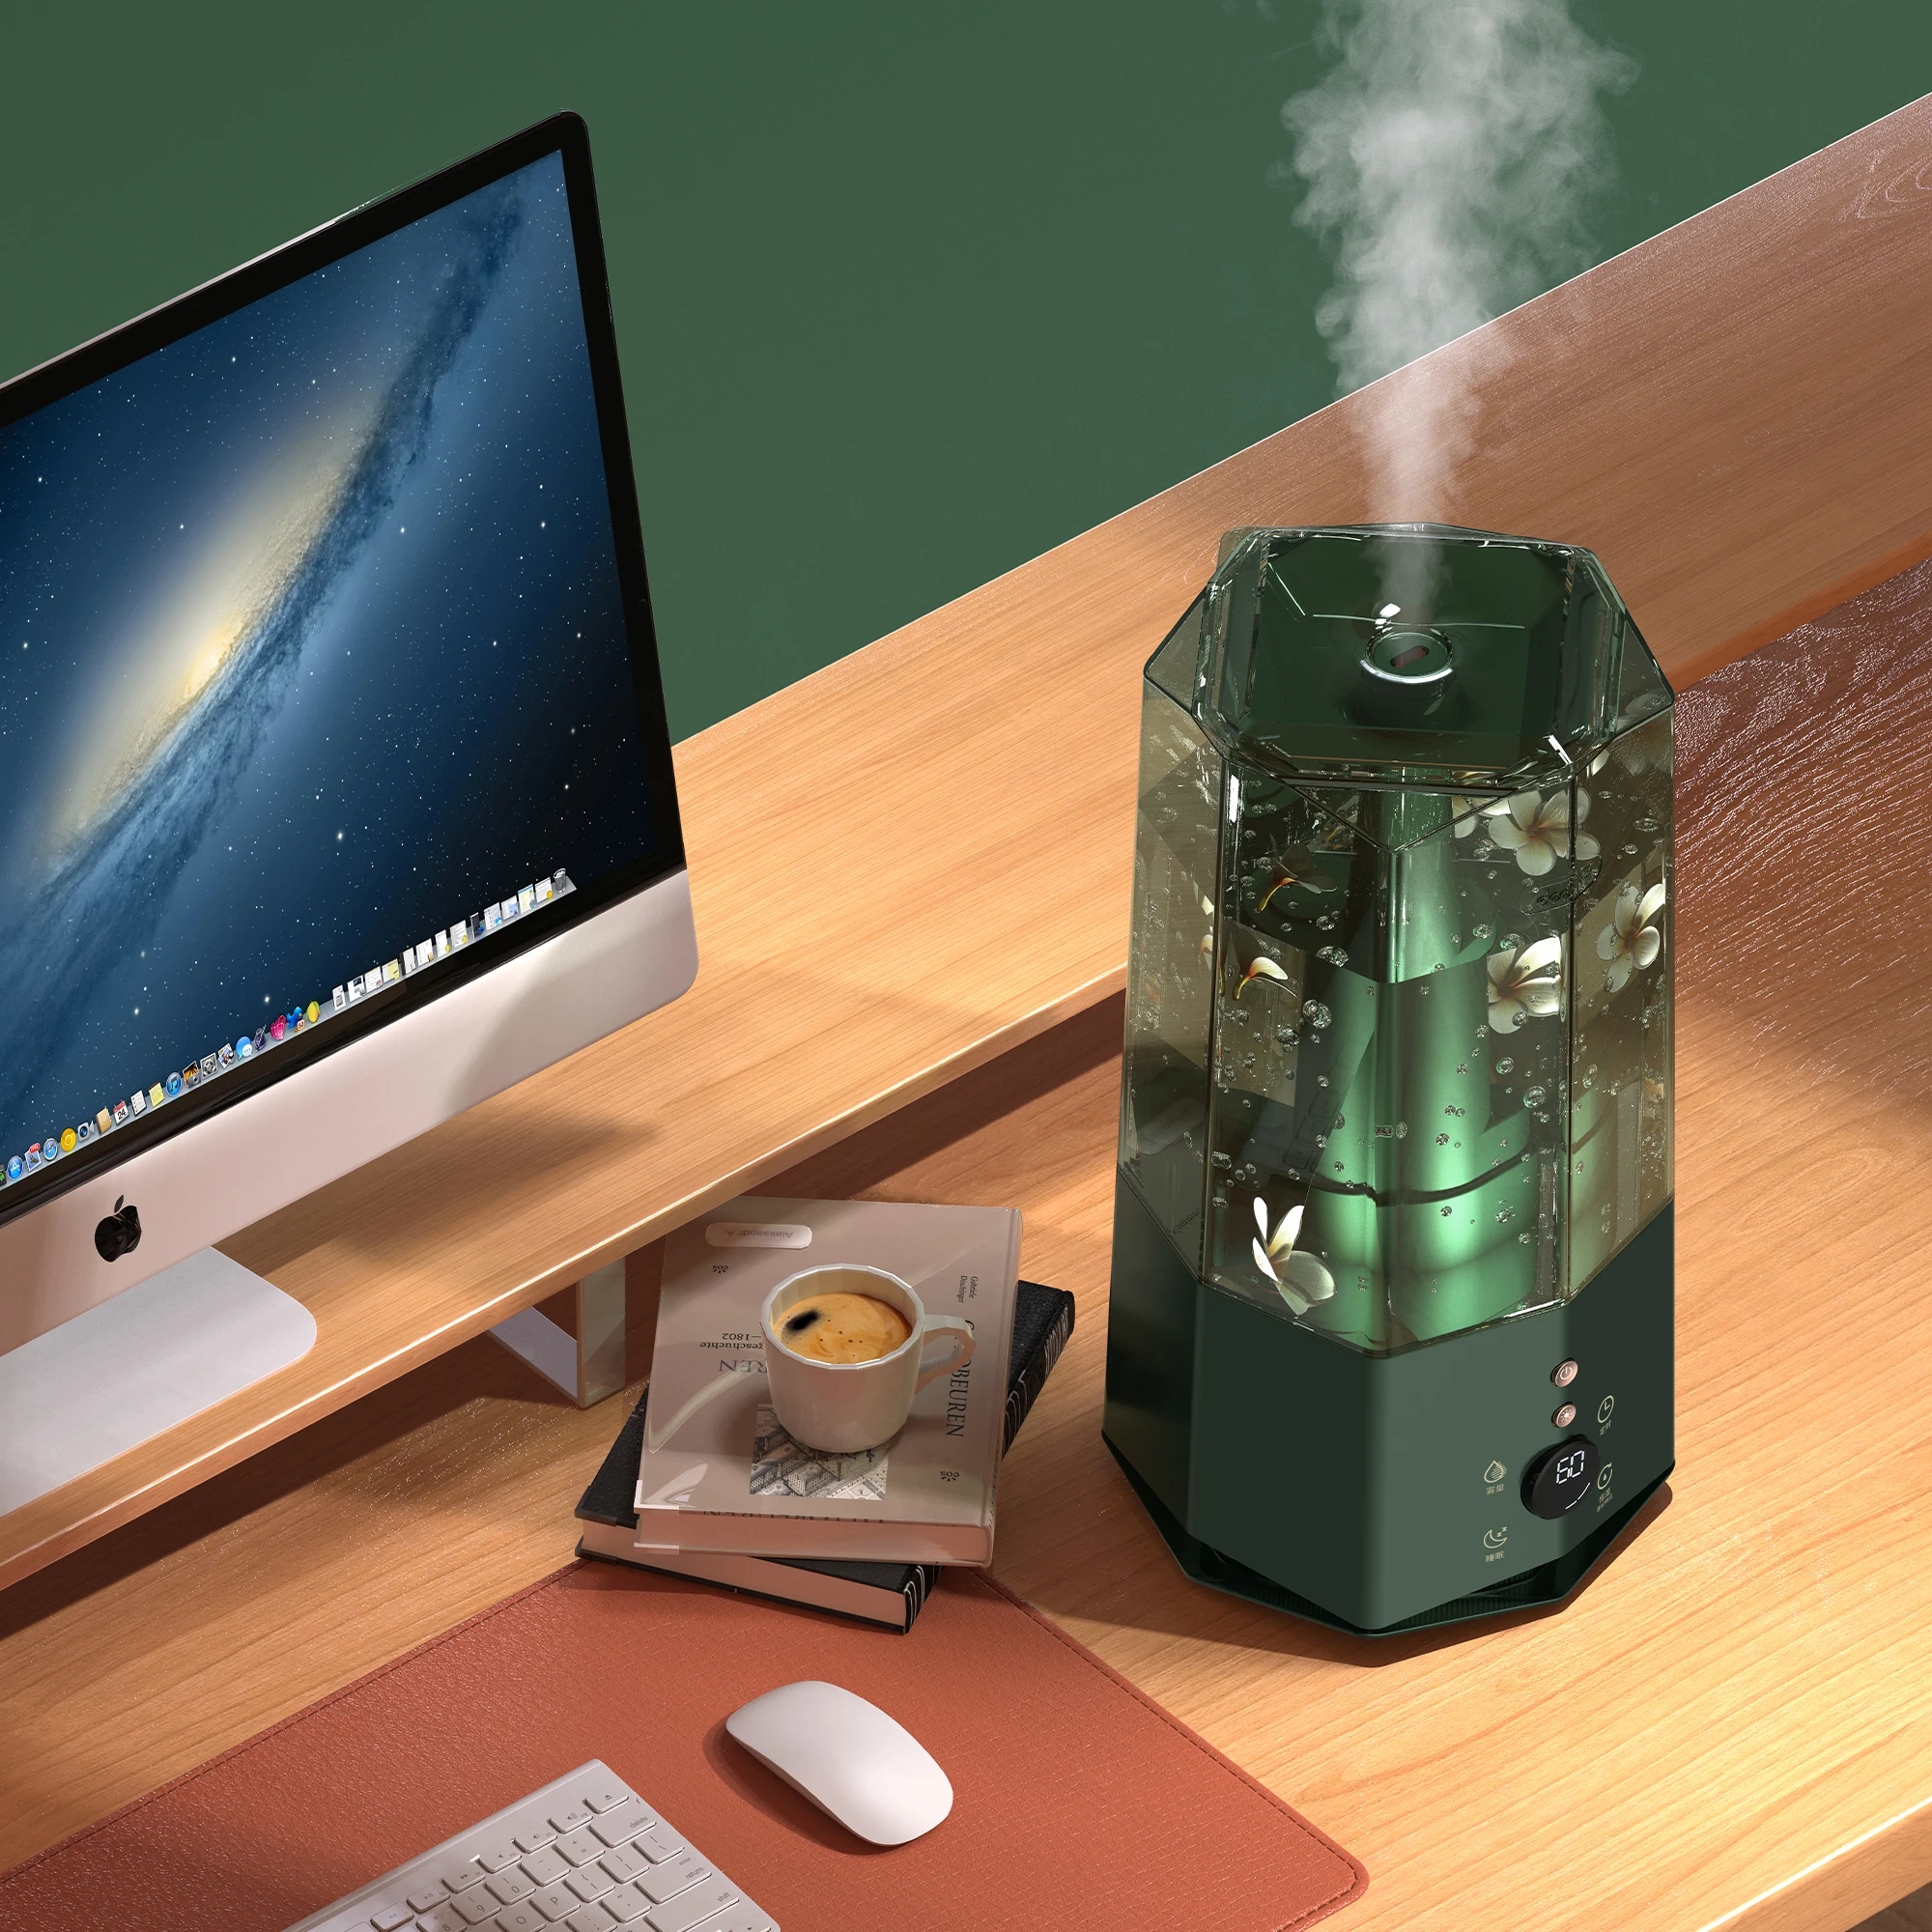 Ультразвуковой Хрустальный увлажнитель воздуха F360DW, холодный бесшумный увлажнитель воздуха со светодиодным цифровым экраном для дома